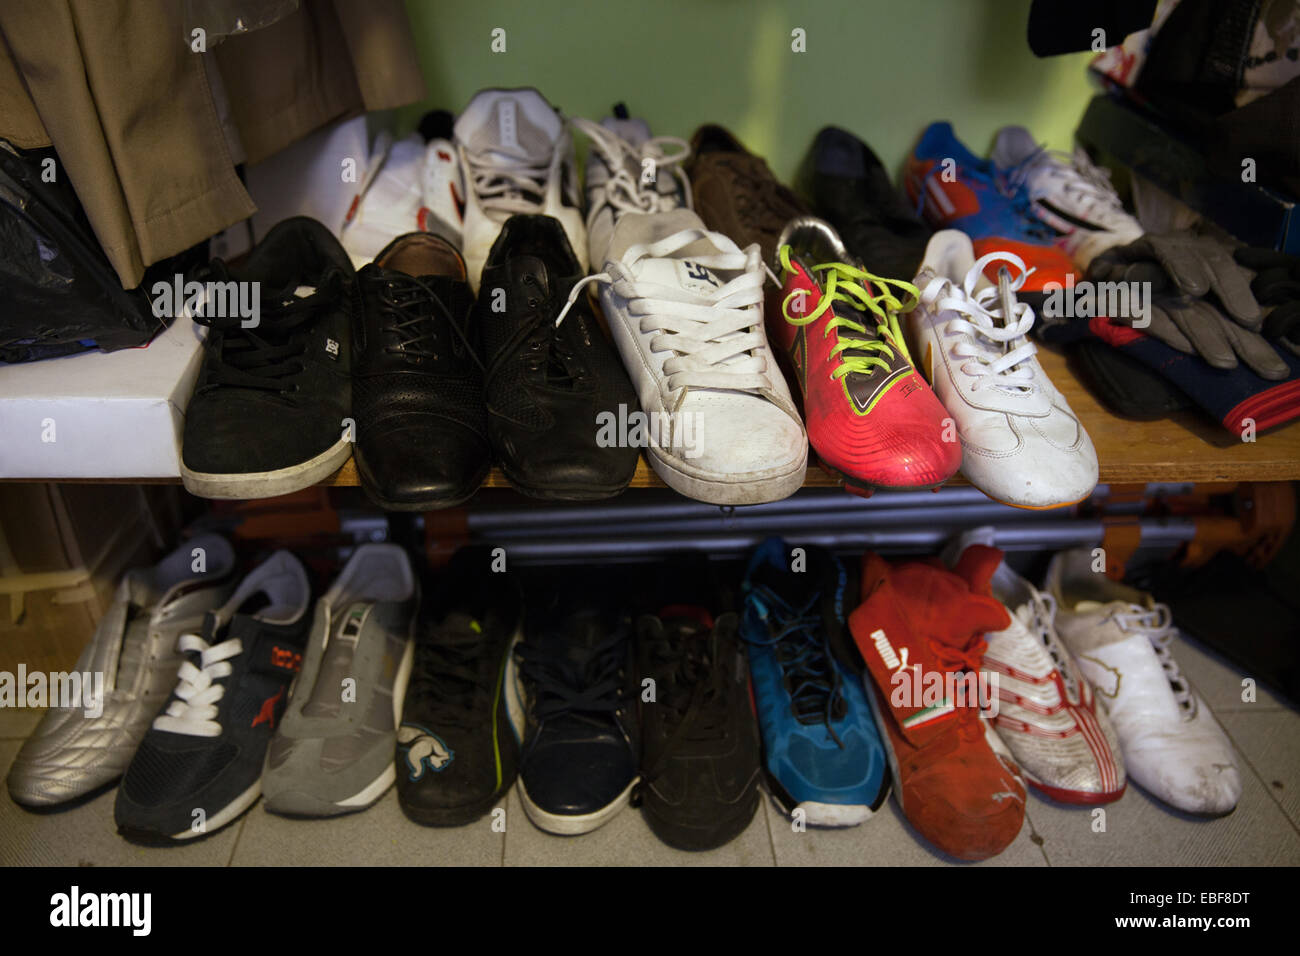 Rodrigo su preciada colección de zapatos izquierdo en su casa en la Ciudad de México. Guerreros Aztecas, equipo de fútbol de amputados en México. Foto de stock